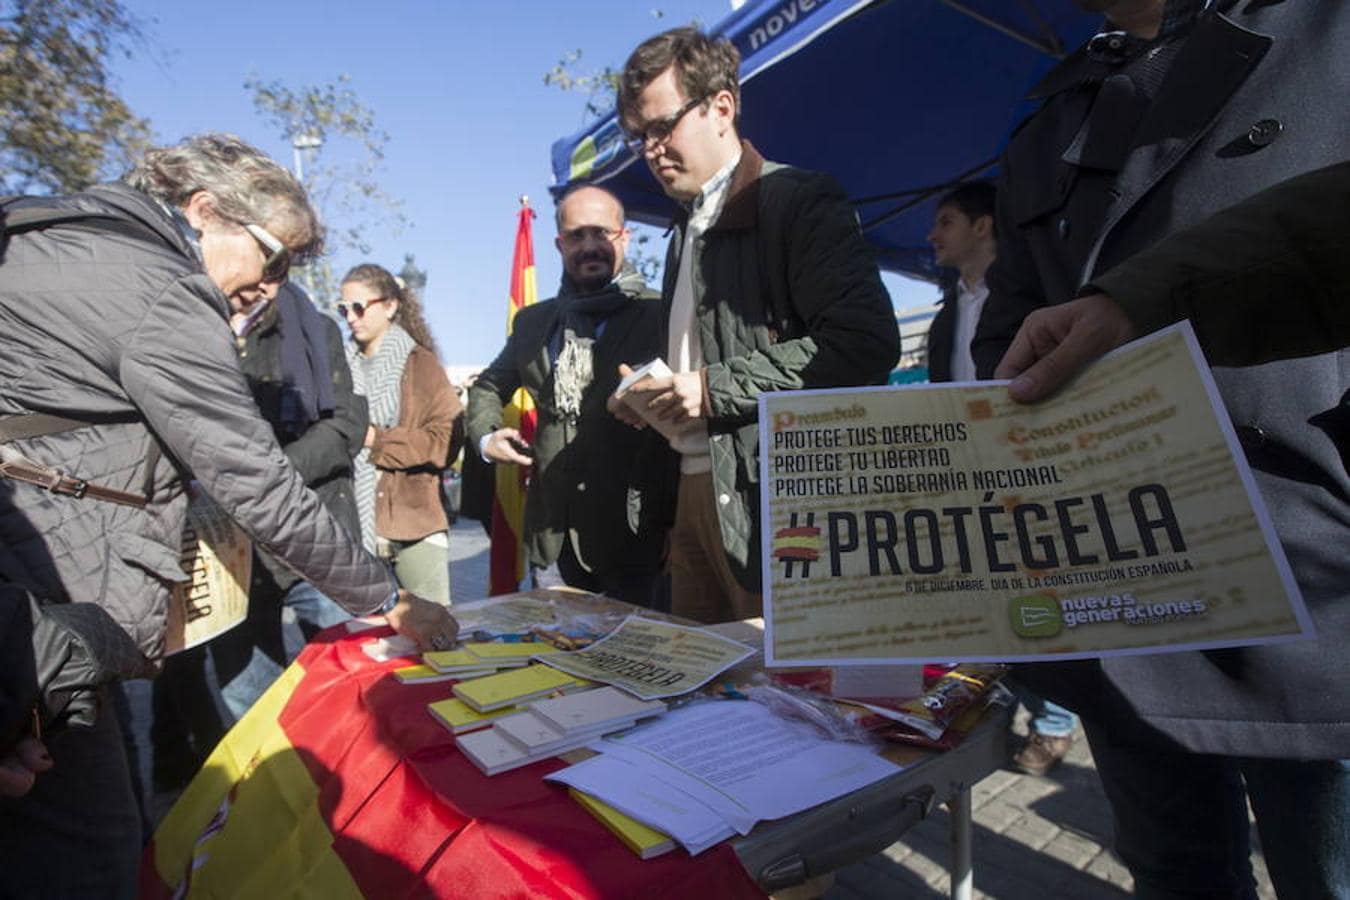 Las Nuevas Generaciones del PPC reparten ejemplares de la Carta Magna, pulseras y banderas de España coincidiendo con el Día de la Constitución